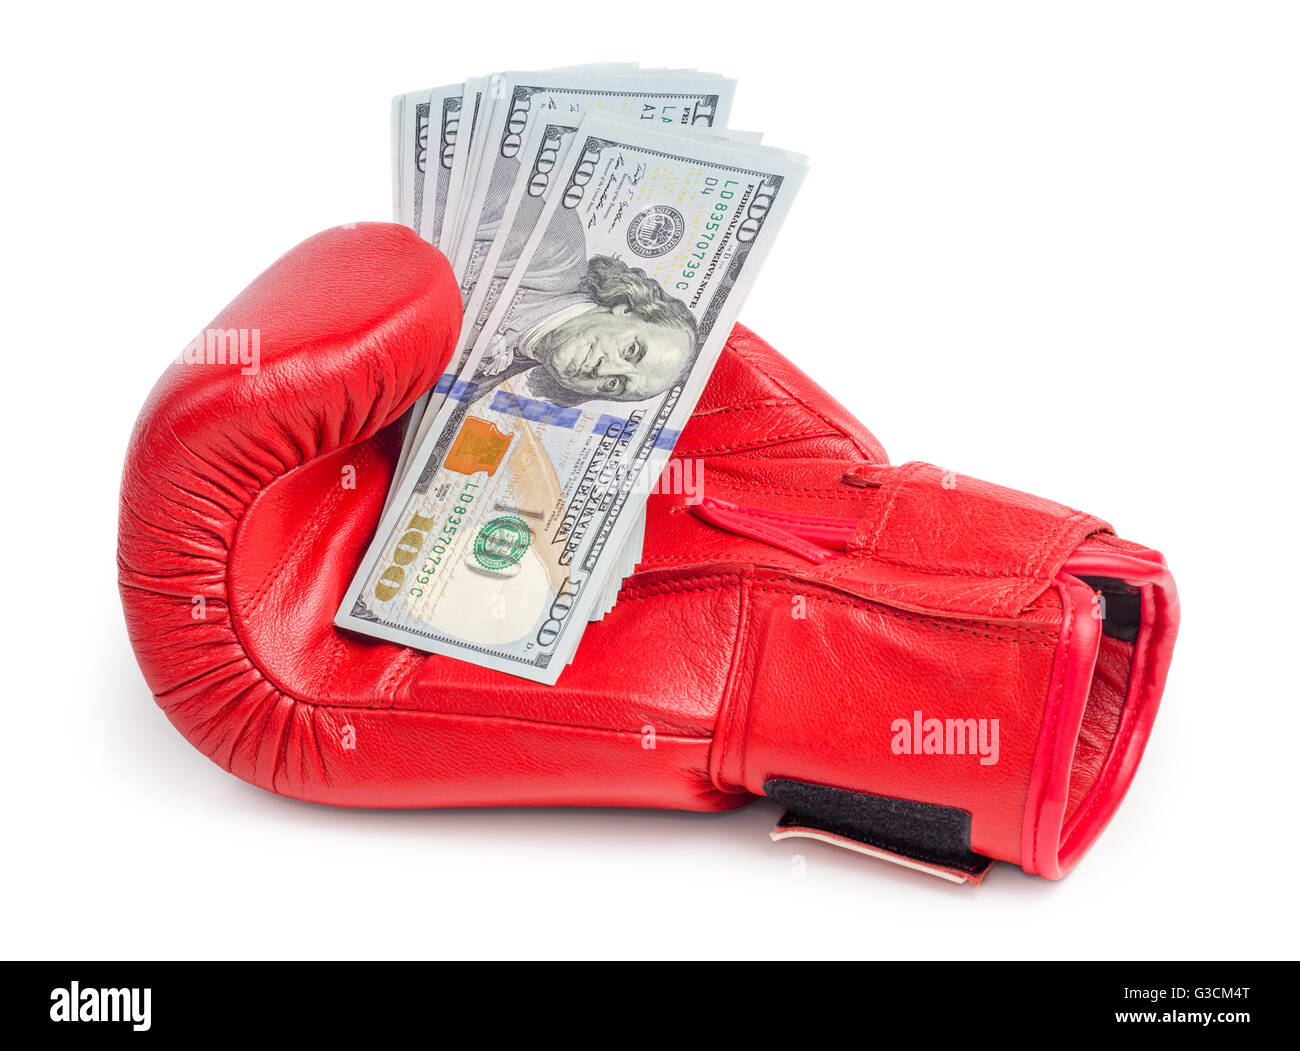 Red guanto di boxe holding di dollari cambiali isolati su sfondo bianco Foto Stock